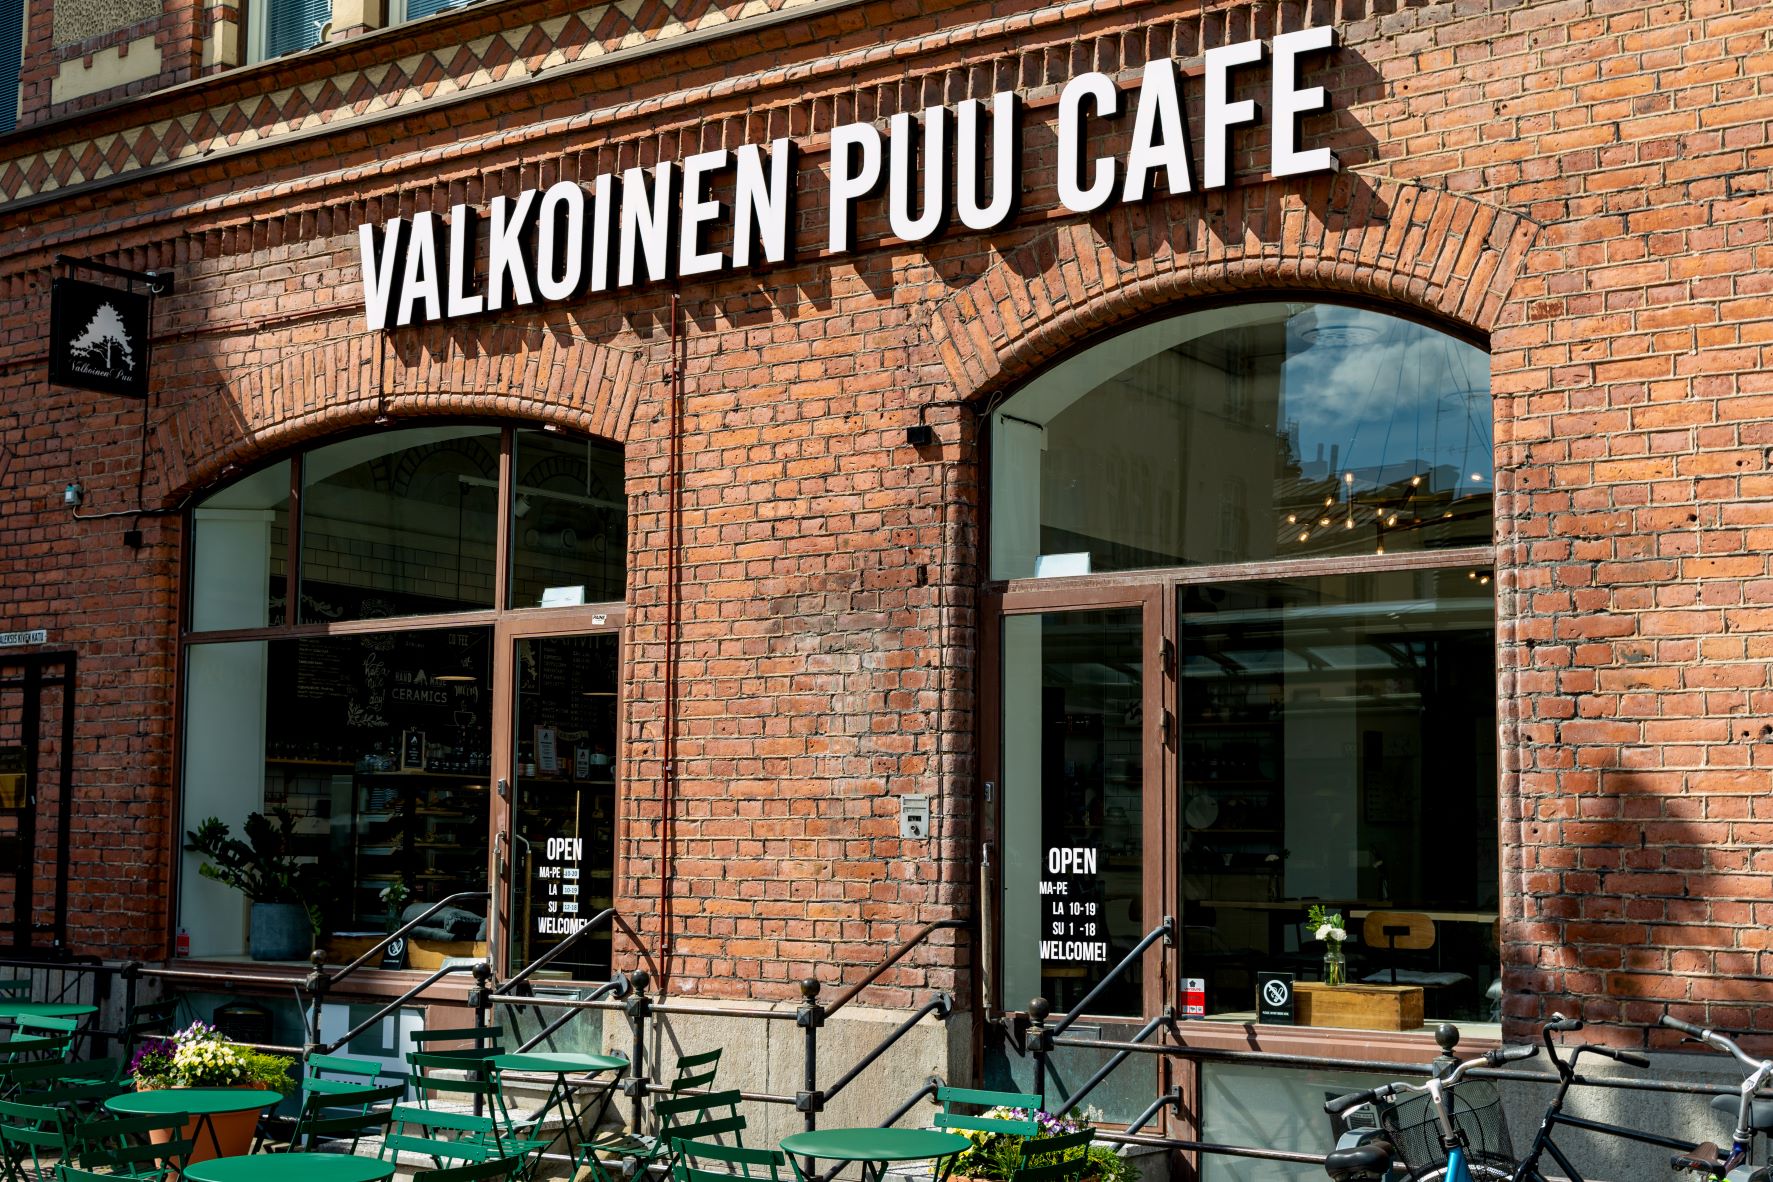 Valkoinen Puu Café. Photo Credit: Visit Finland